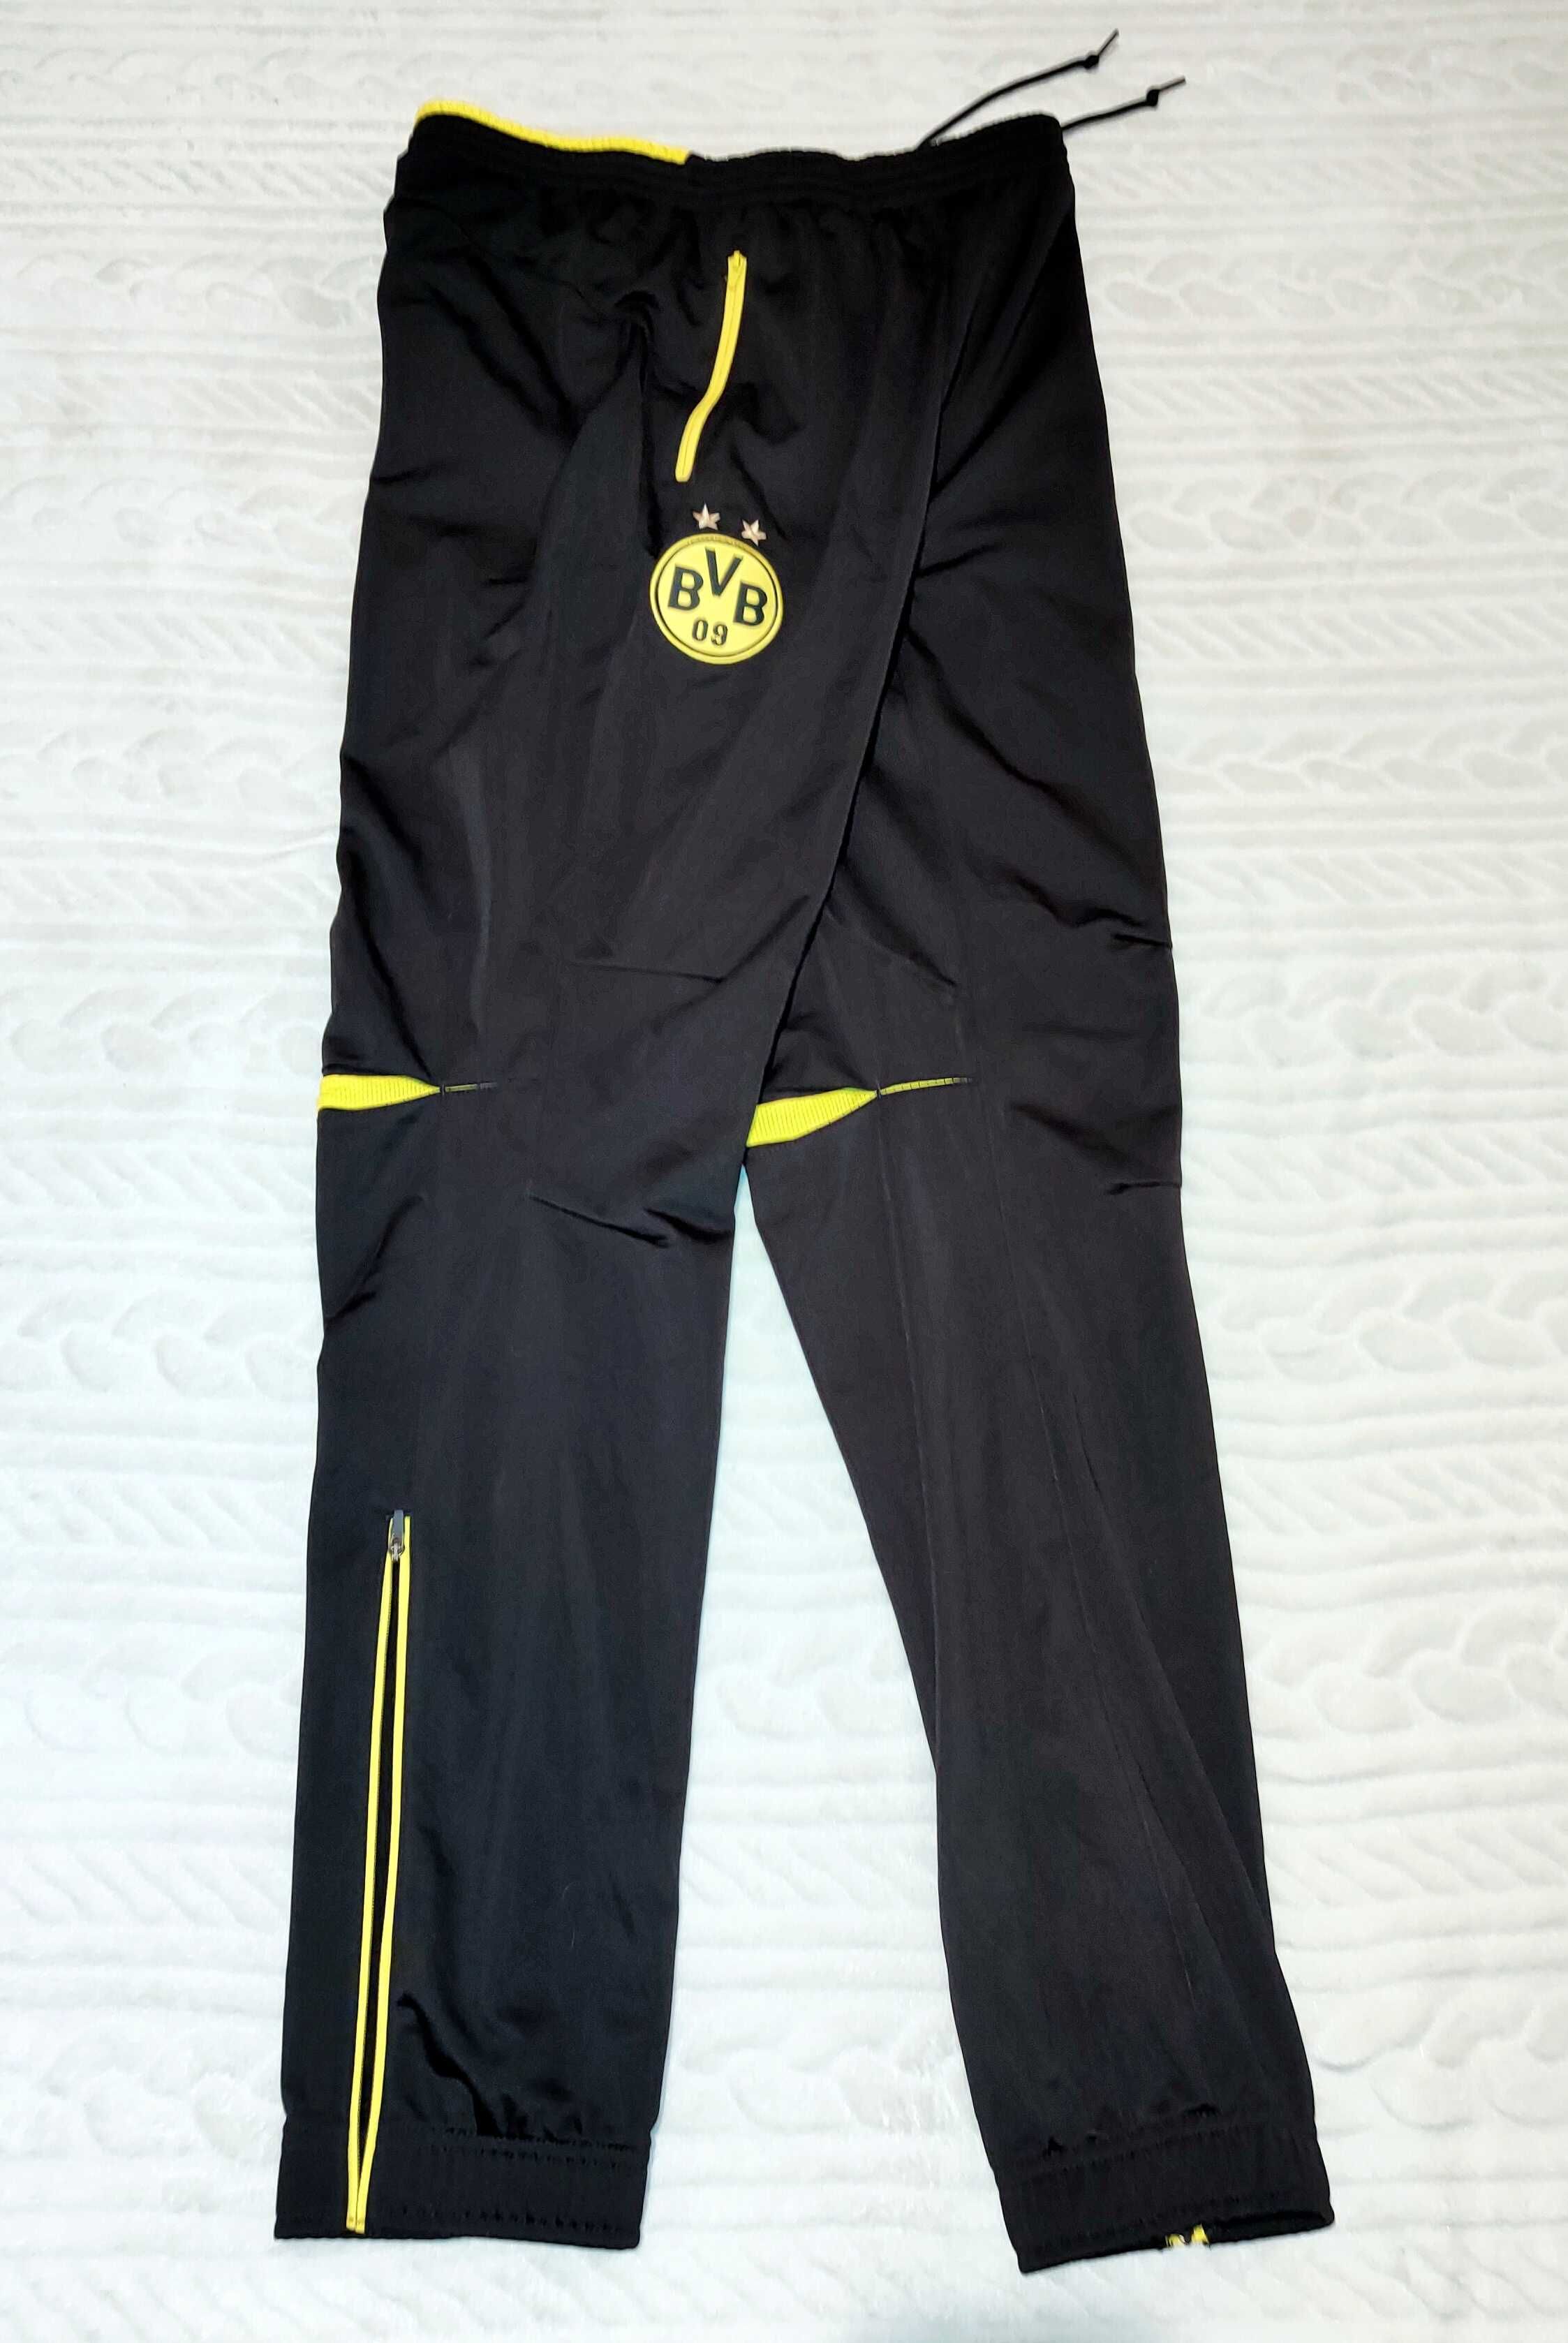 BVB Borussia Dortmund Oryginalne spodnie klubowa PUMA roz M/L